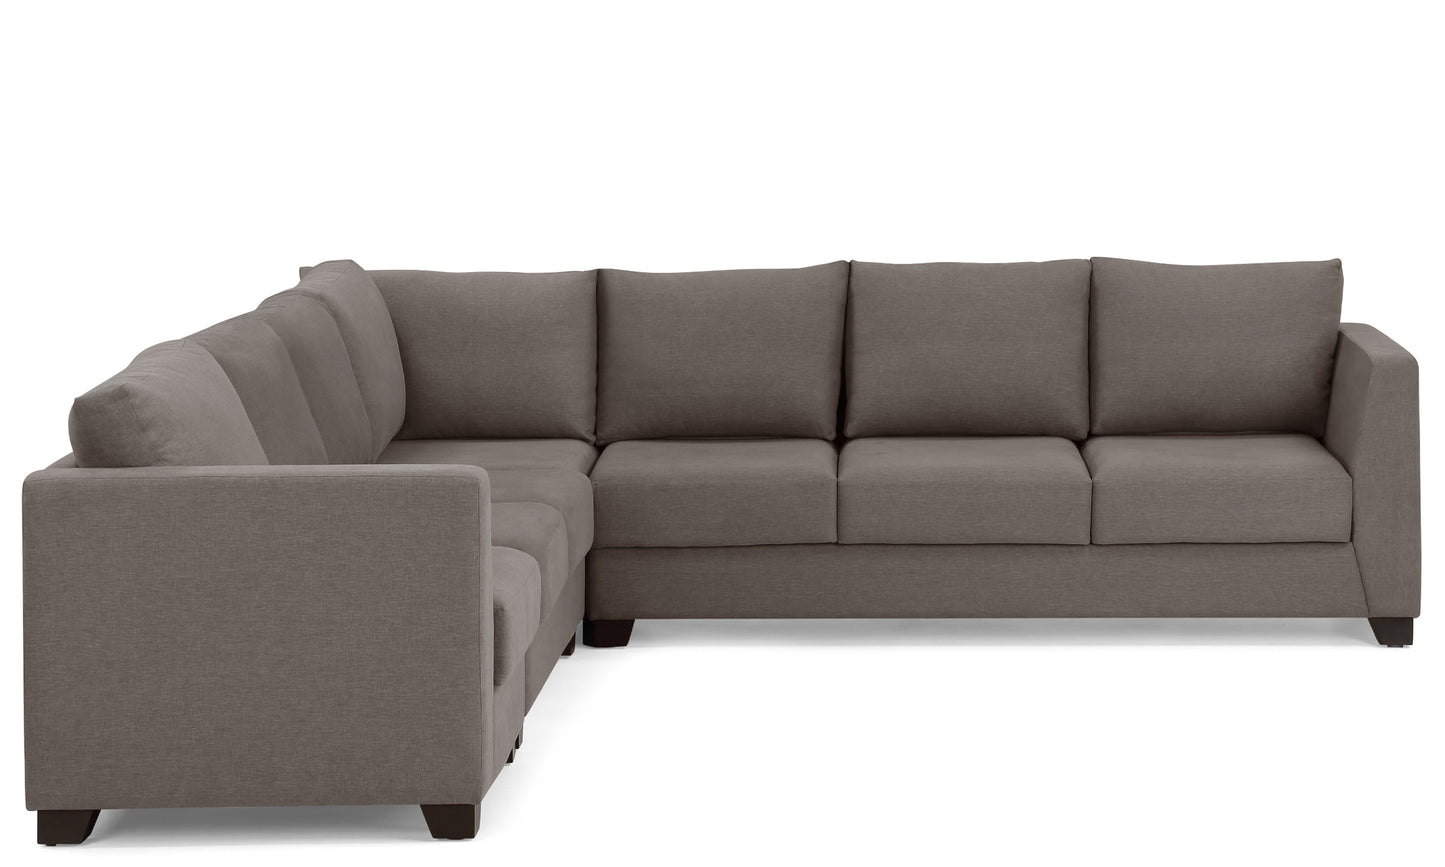 Elton Sectional Sofa 6 Seater